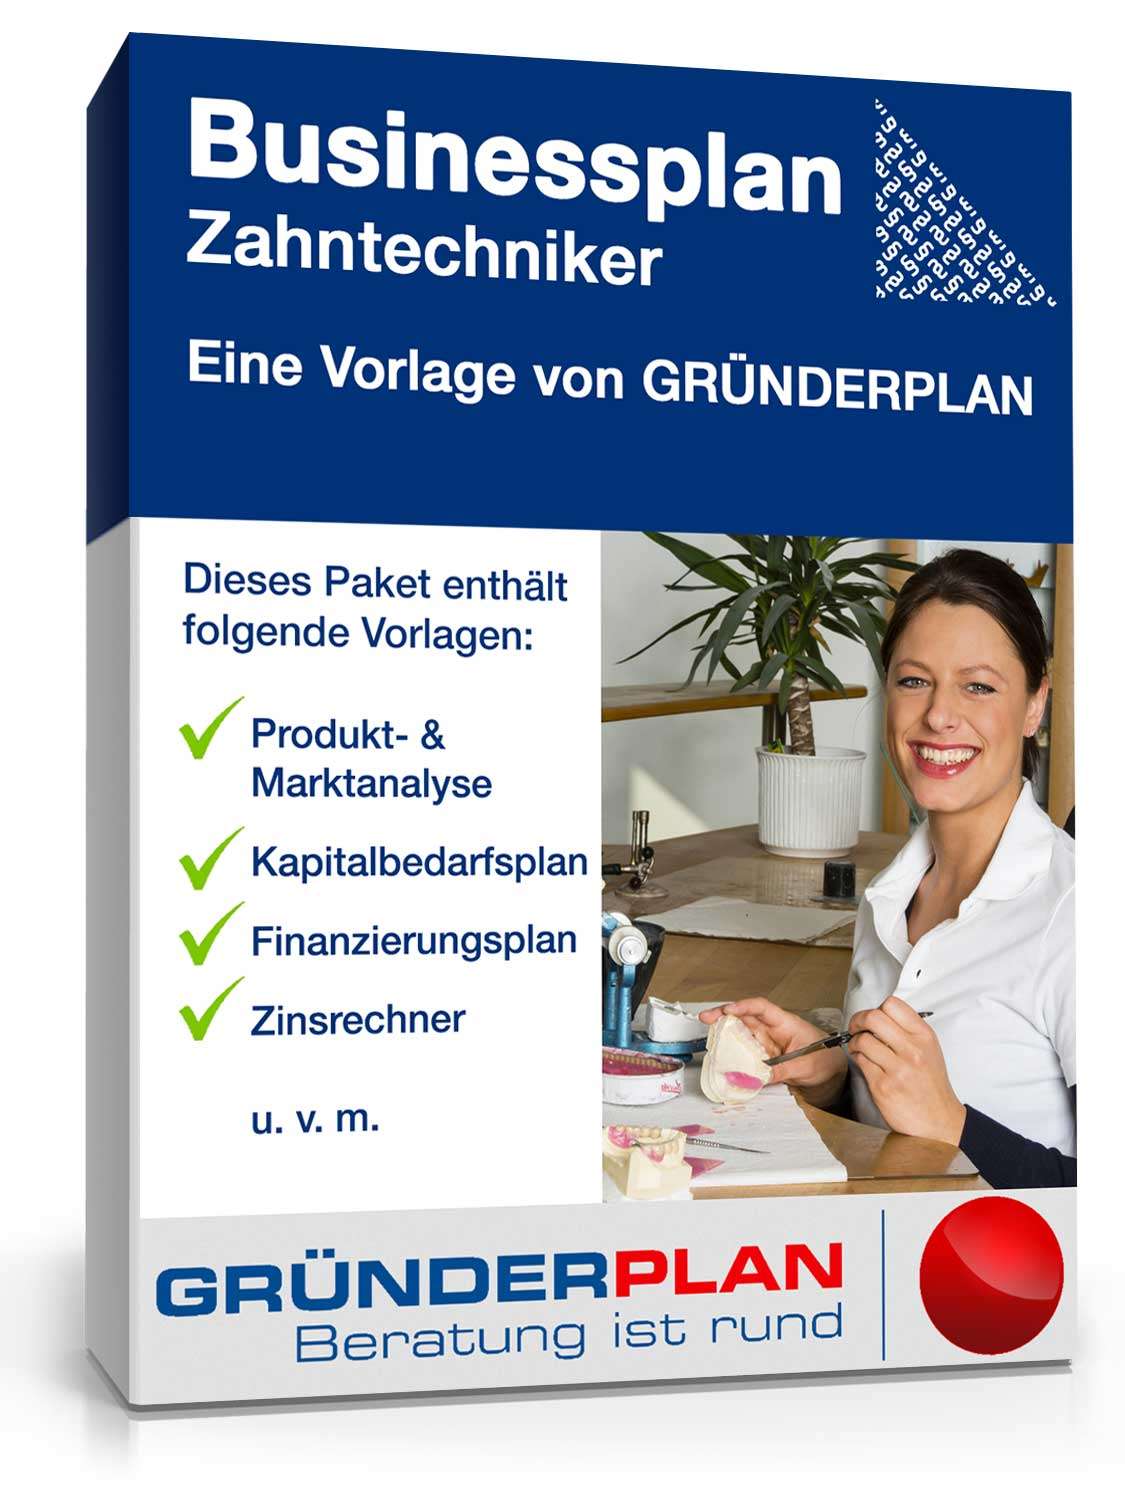 Hauptbild des Produkts: Businessplan Zahntechniker von Gründerplan